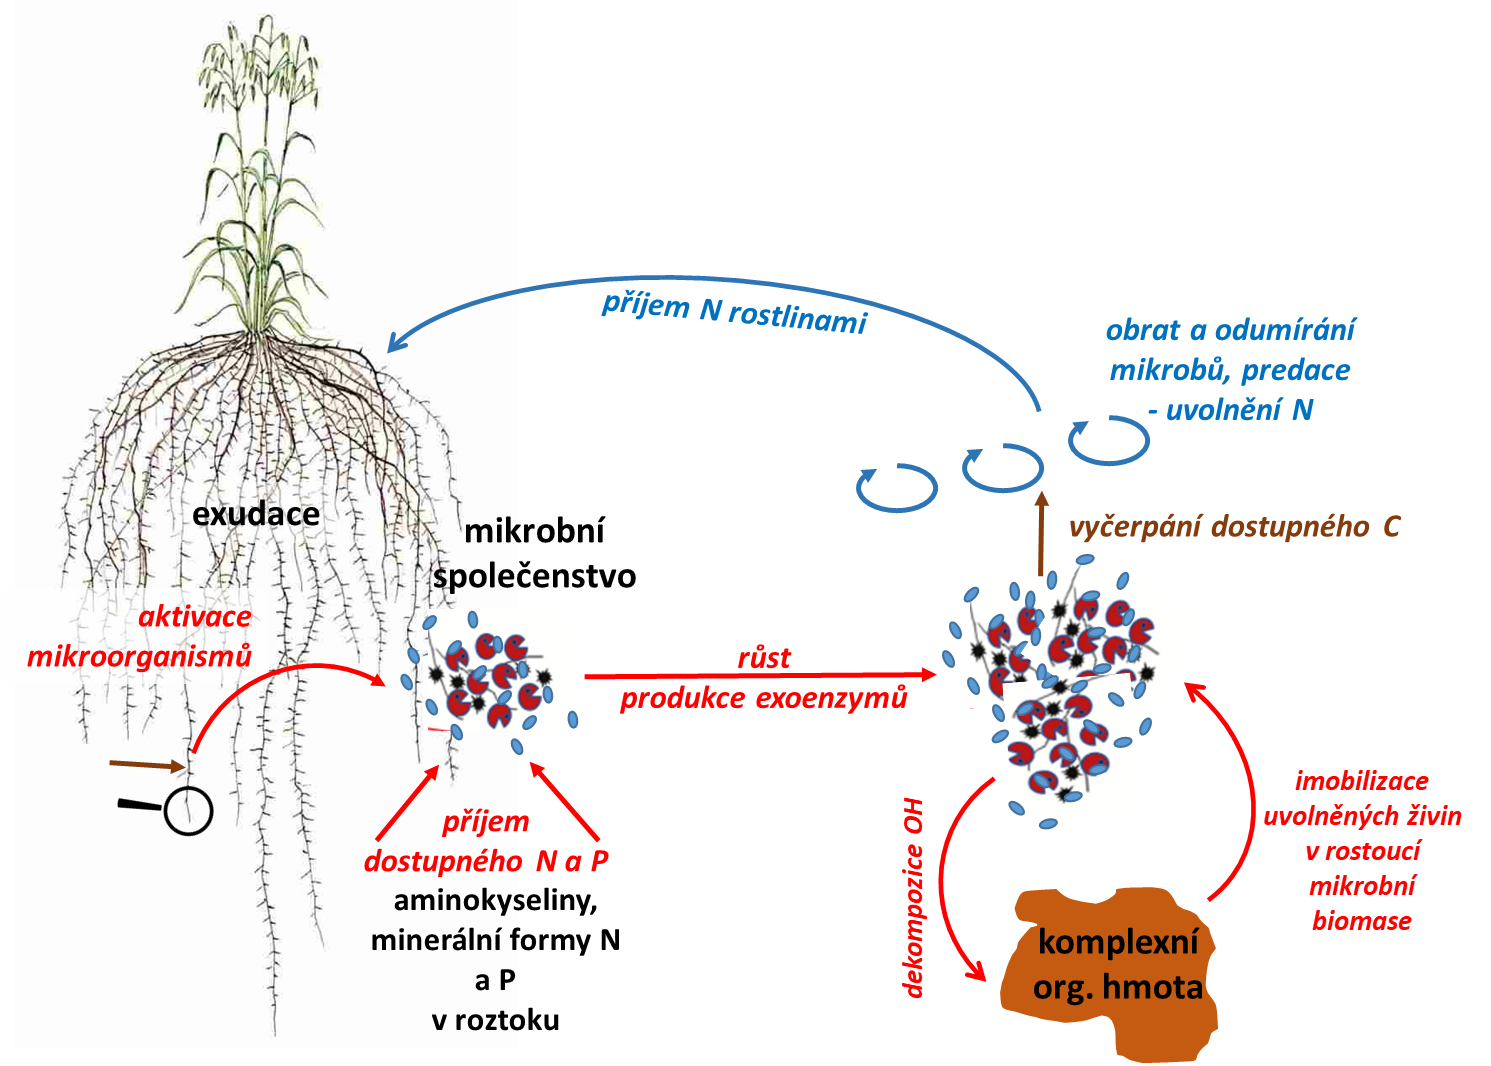 Obr. 4. Interakce rostlin a půdních mikroorganismů v rhizosféře je oboustranně prospěšná. Kořenové exudáty aktivují půdní mikroorganismy, které se v daném místě nacházejí. Ty začnou růst a produkovat extracelulární enzymy, které rozkládají komplexní organické sloučeniny v půdě na jednodušší. Mikroorganismy je využívají a živiny z nich zabudovávají do svých buněk. Jak kořen odrůstá, zóna zásobení půdy exudáty se posouvá jinam a velké mikrobní společenstvo začne strádat. Z odumírajících buněk se uvolňují živiny ve formách, které mohou přijmout kořeny rostlin nebo jejich symbiotičtí partneři.